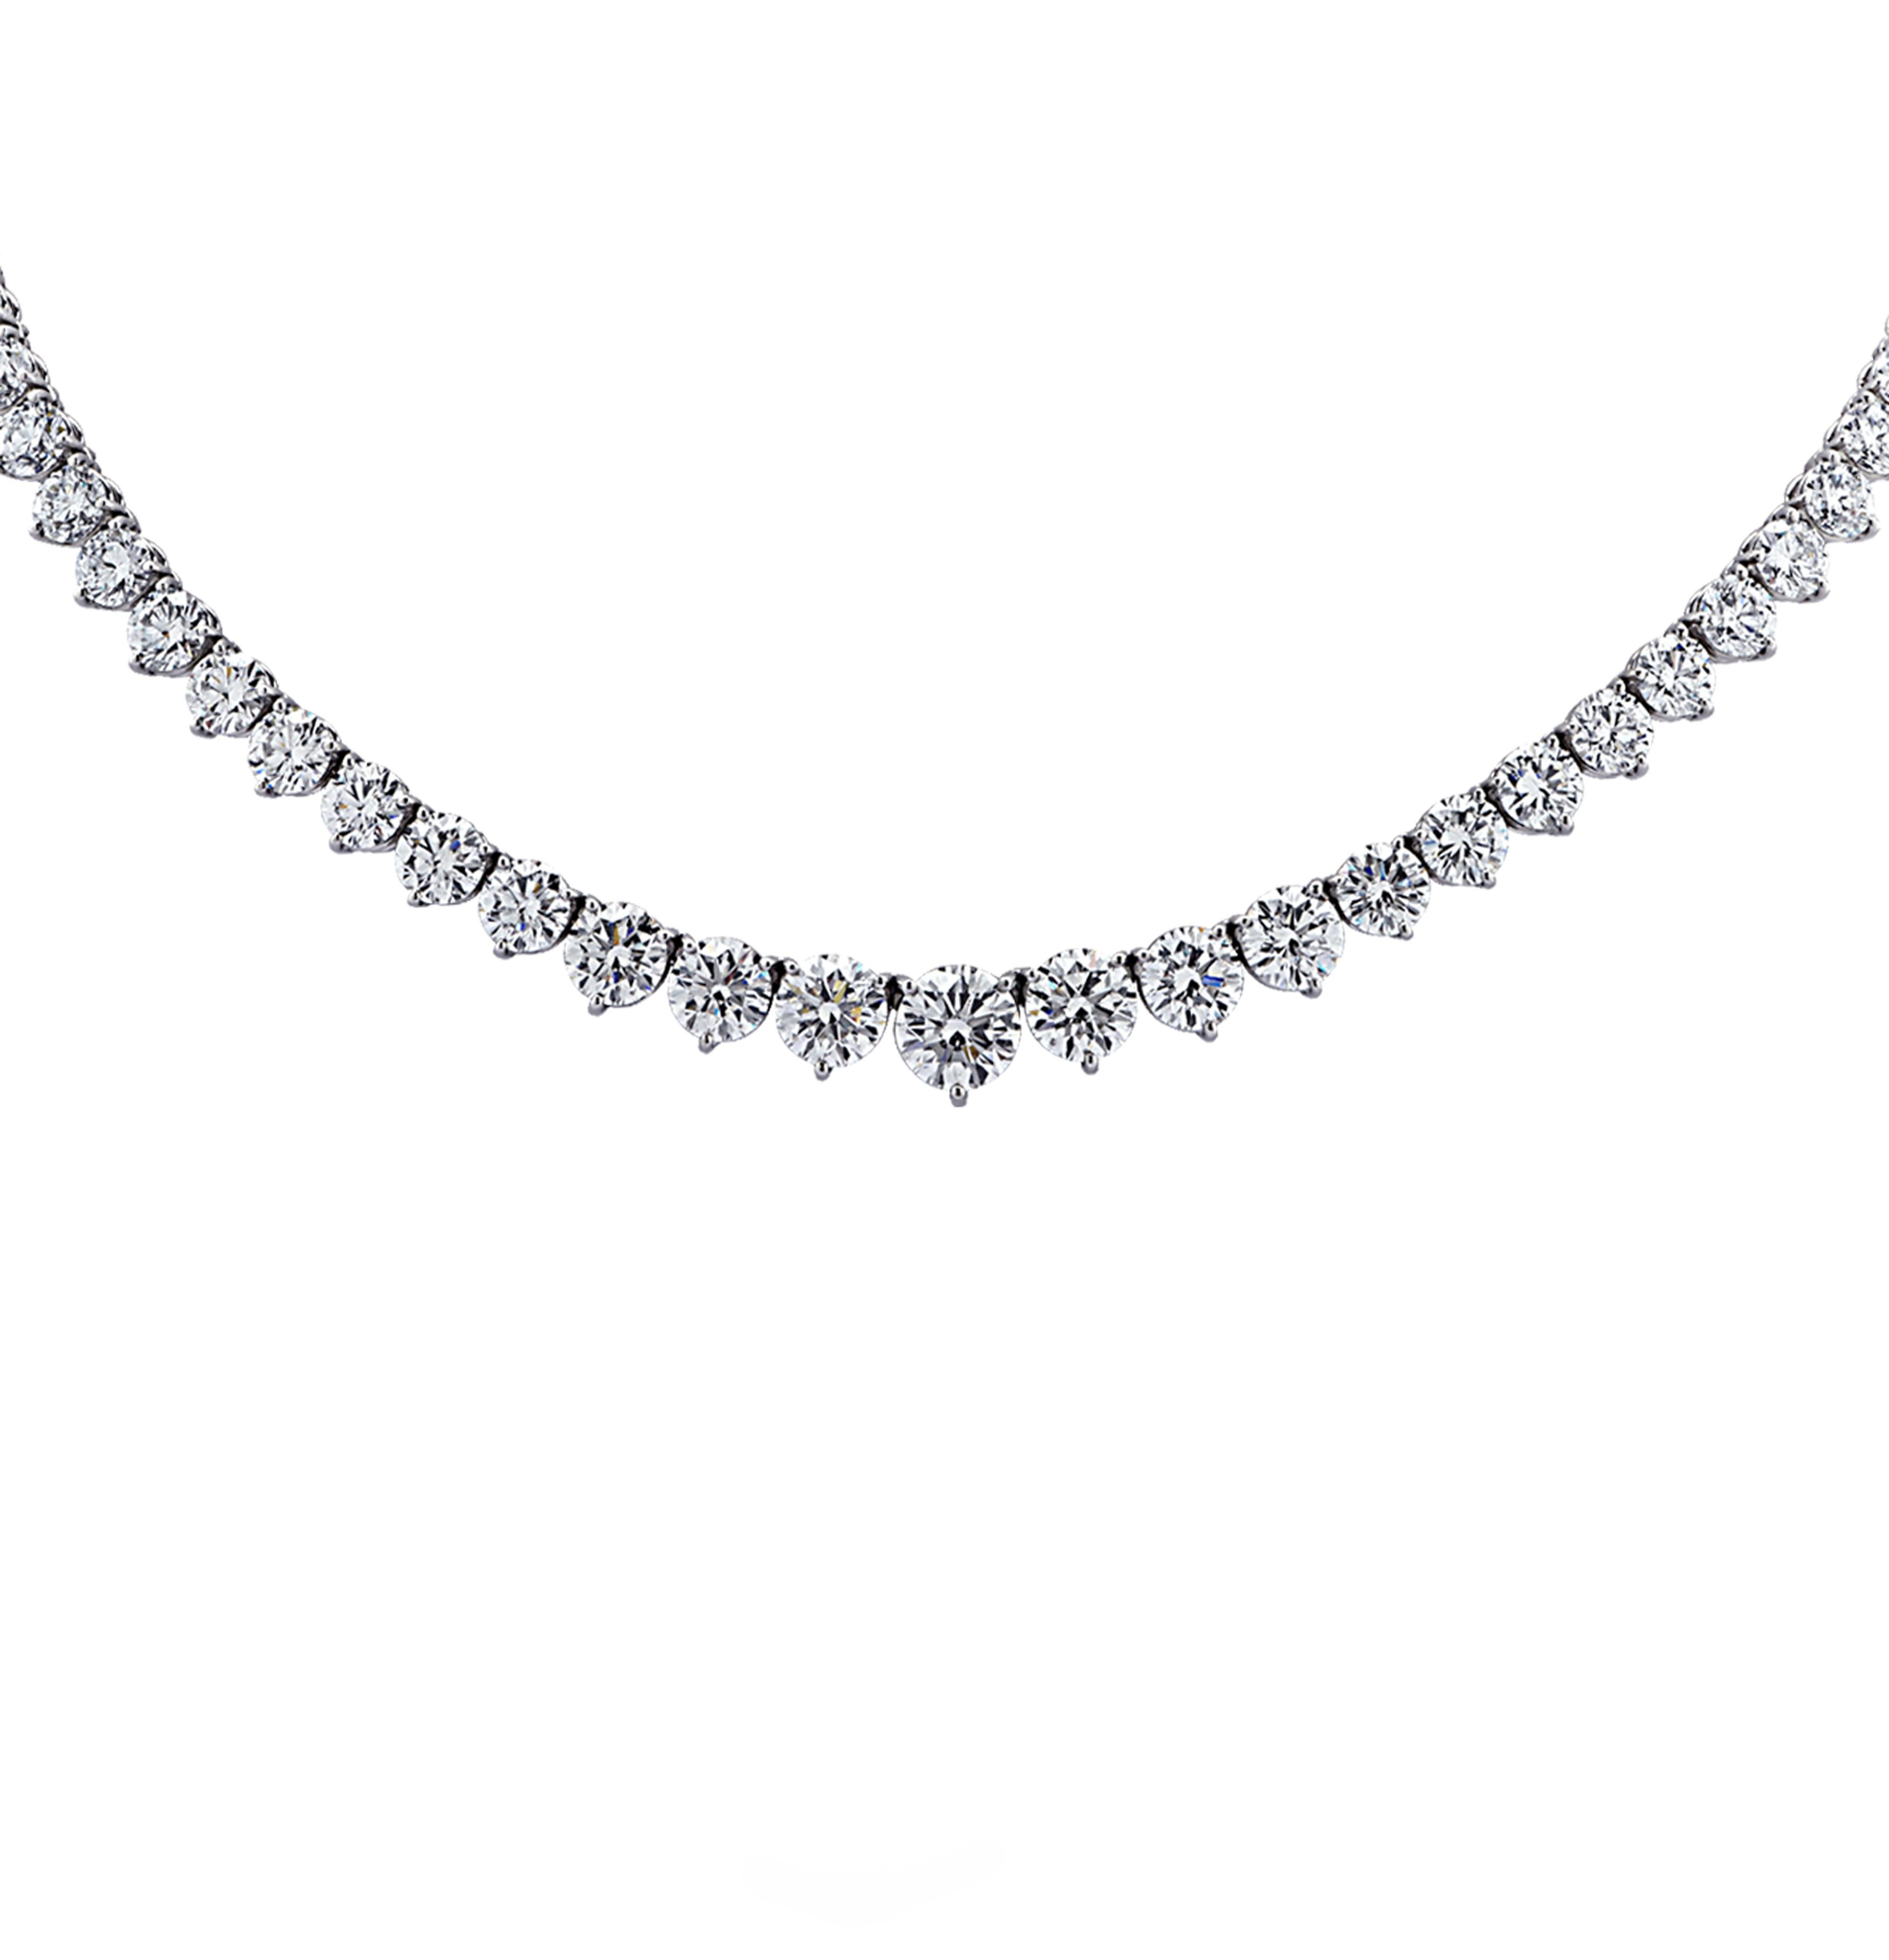 Exquisites Diamantencollier Riviera von Vivid Diamonds aus Platin mit 91 runden Diamanten im Brillantschliff mit einem Gesamtgewicht von 32,08 Karat, Farbe G-H, Reinheit VS1-SI2. Neun der größten Diamanten sind vom GIA zertifiziert. Die Diamanten